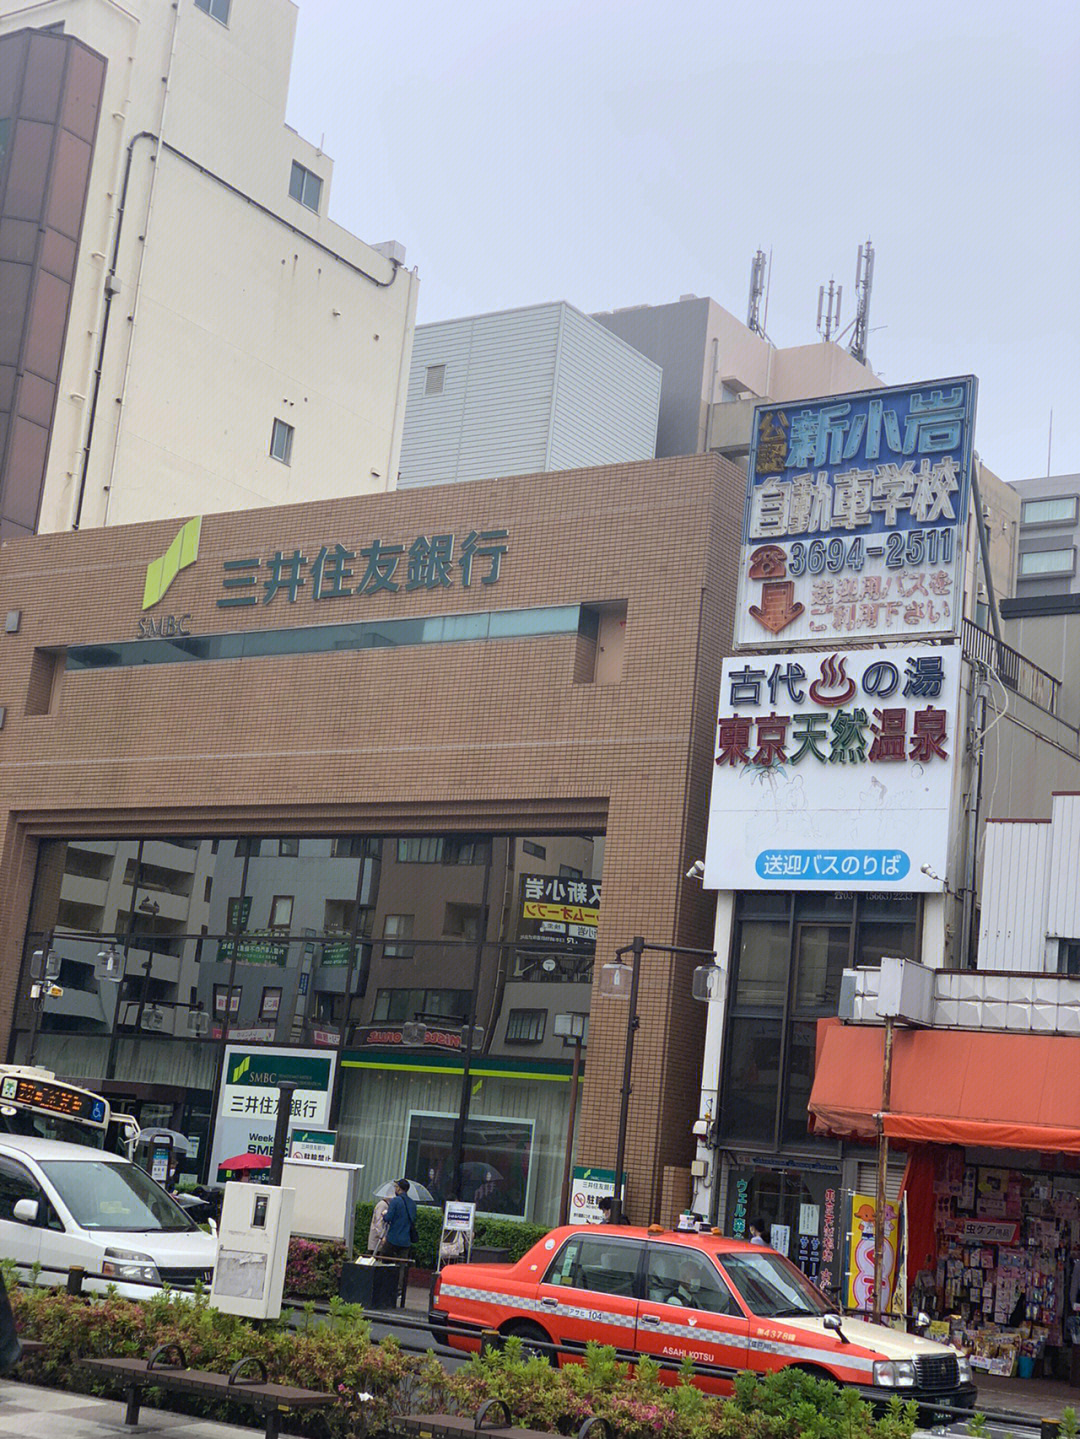 散步在东京都葛饰区新小岩商店街,玲琅满目,看的眼花缭乱94